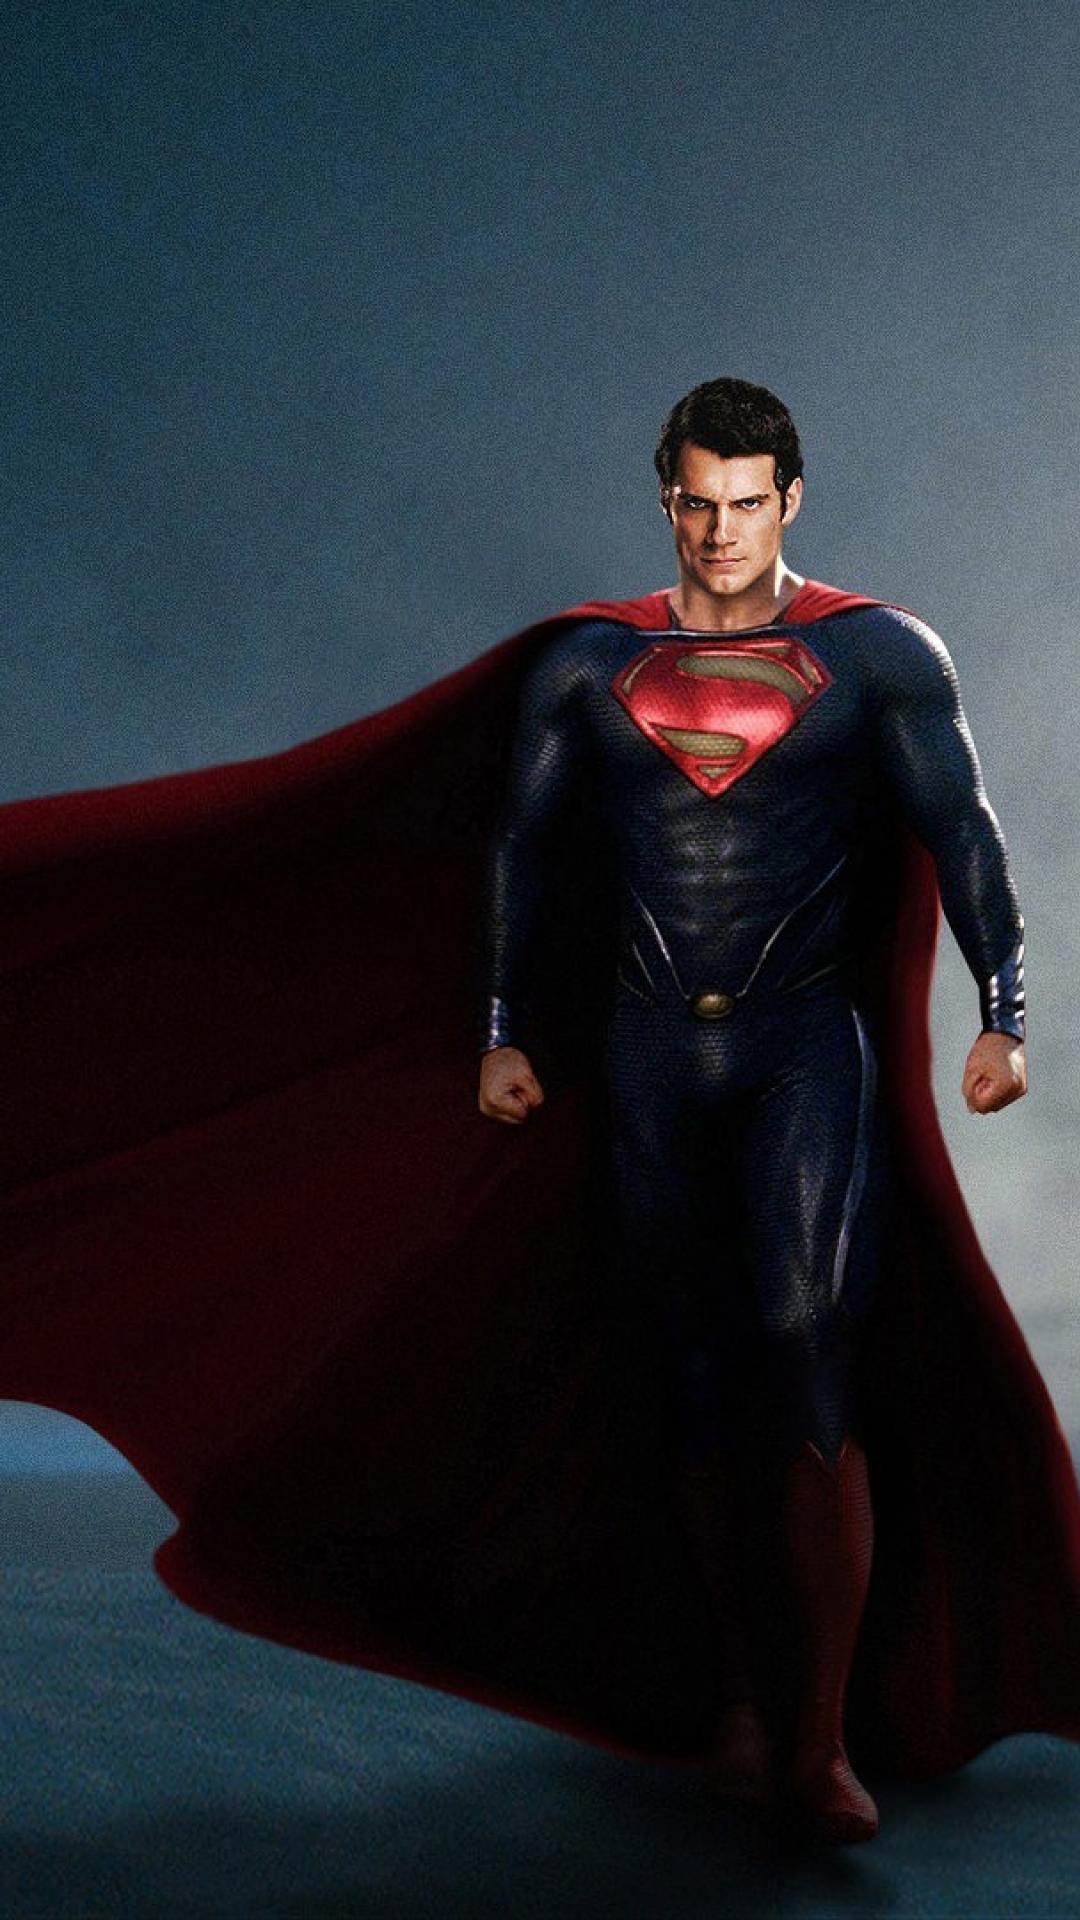 fond d'écran superman hd pour android,superman,super héros,personnage fictif,homme chauve souris,ligue de justice